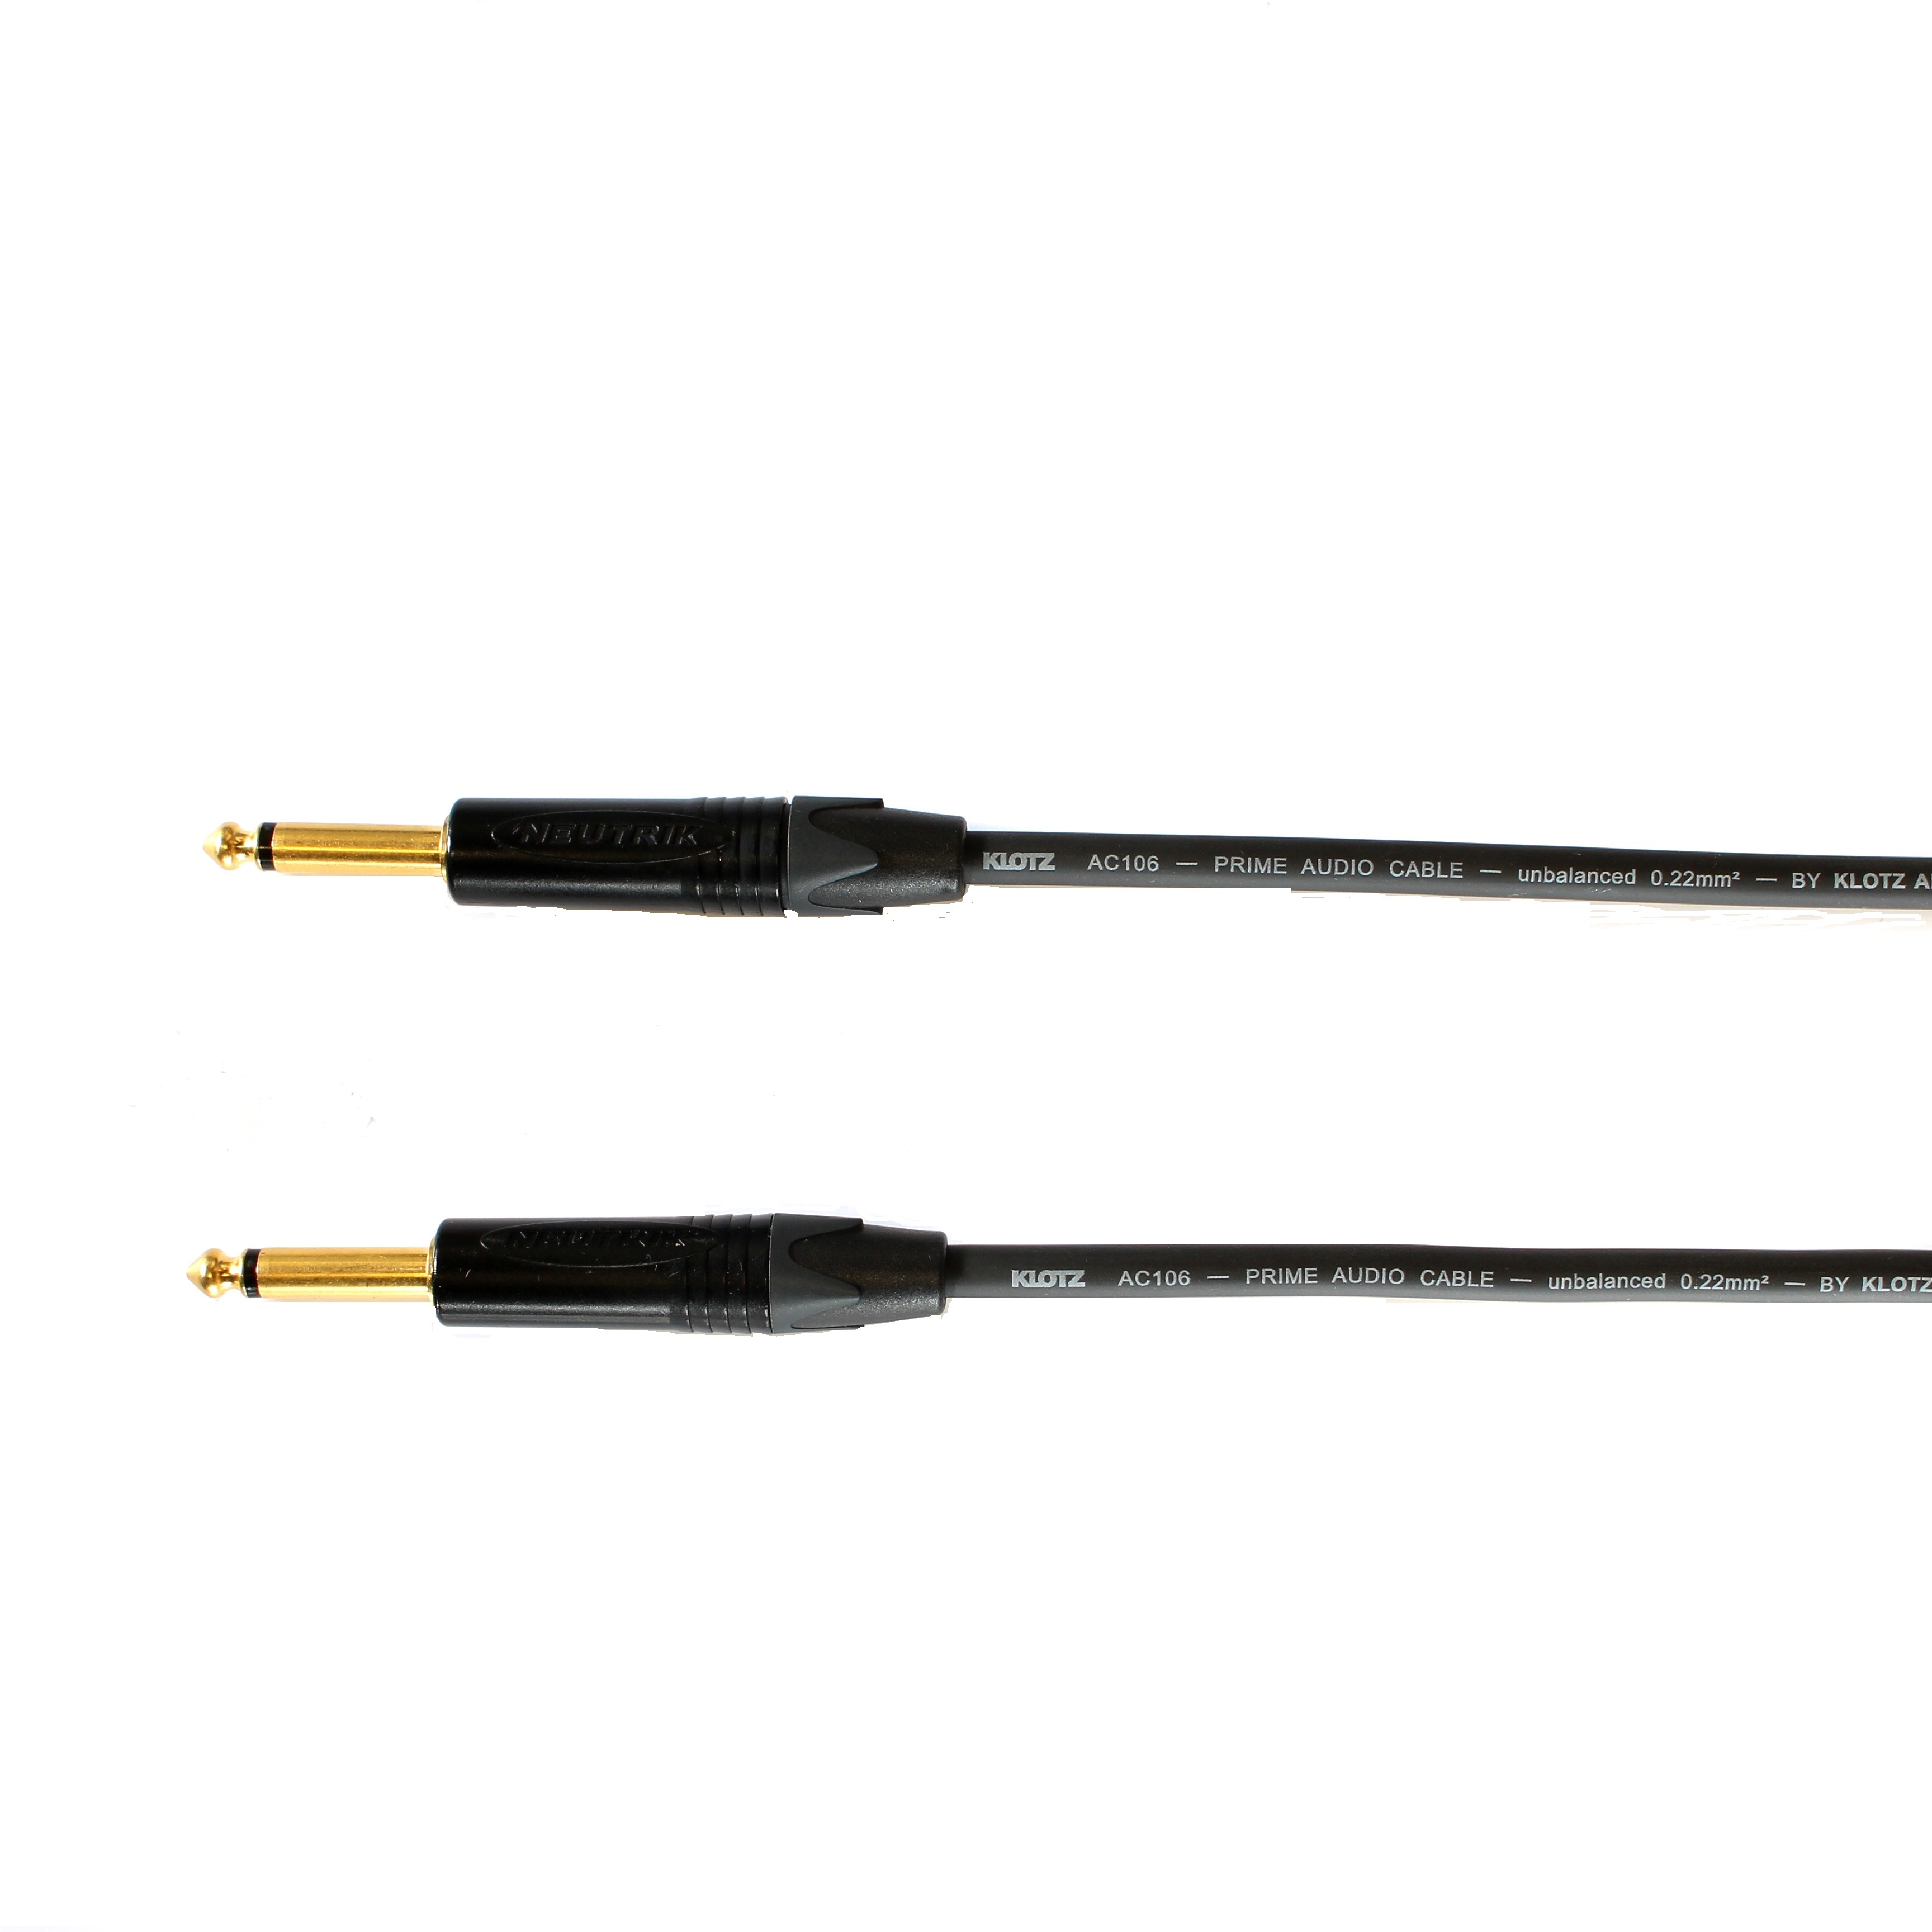 Kytarový kabel Jack 6,3 mono přímý/ Jack 6,3 mono přímý, 8 m, AC106